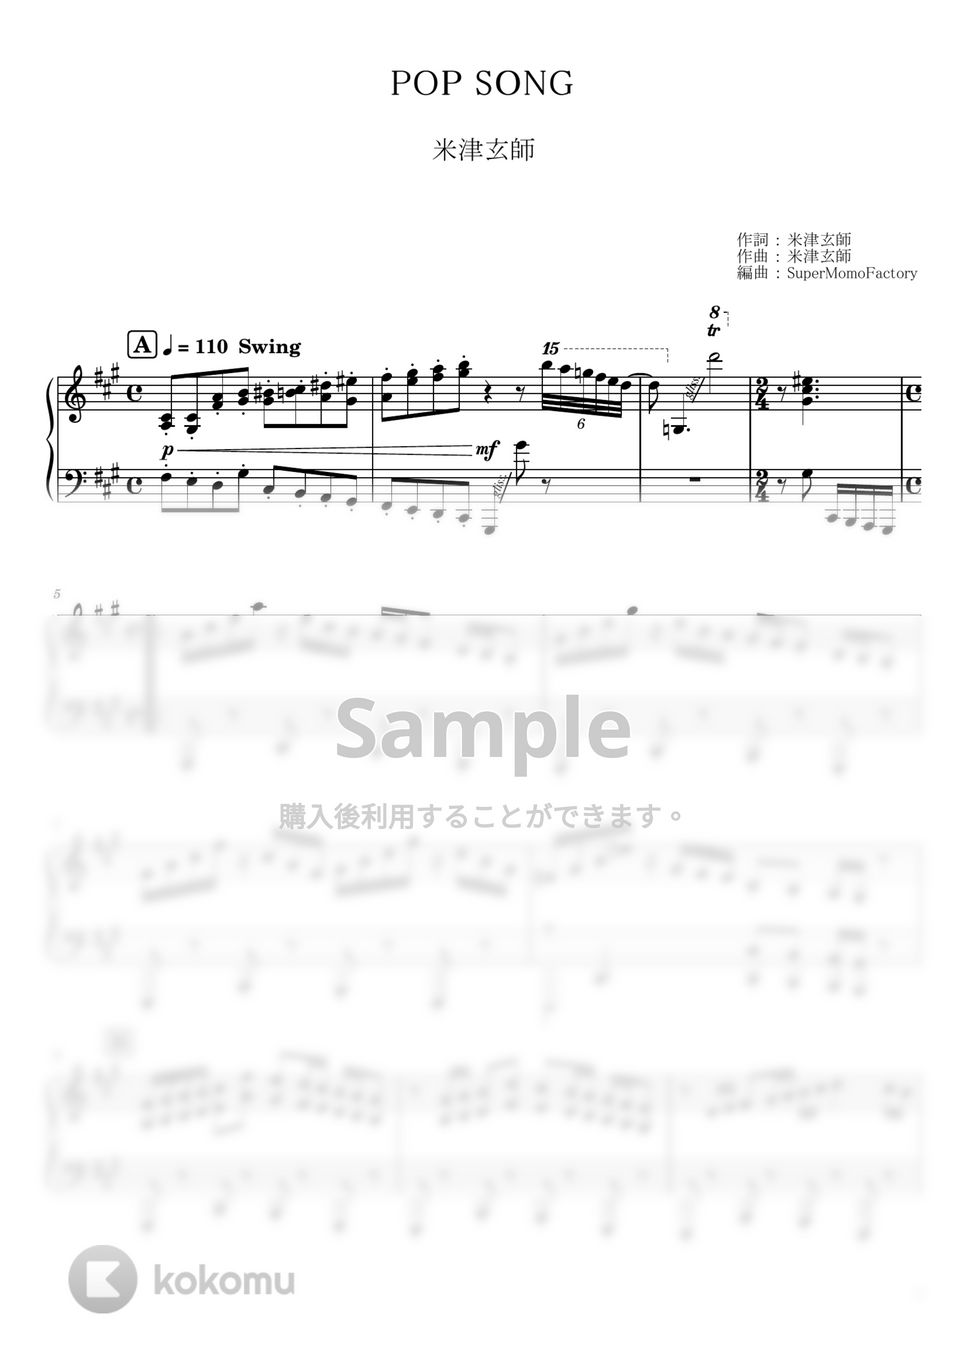 米津玄師 - POP SONG (ピアノソロ / 上級) by SuperMomoFactory